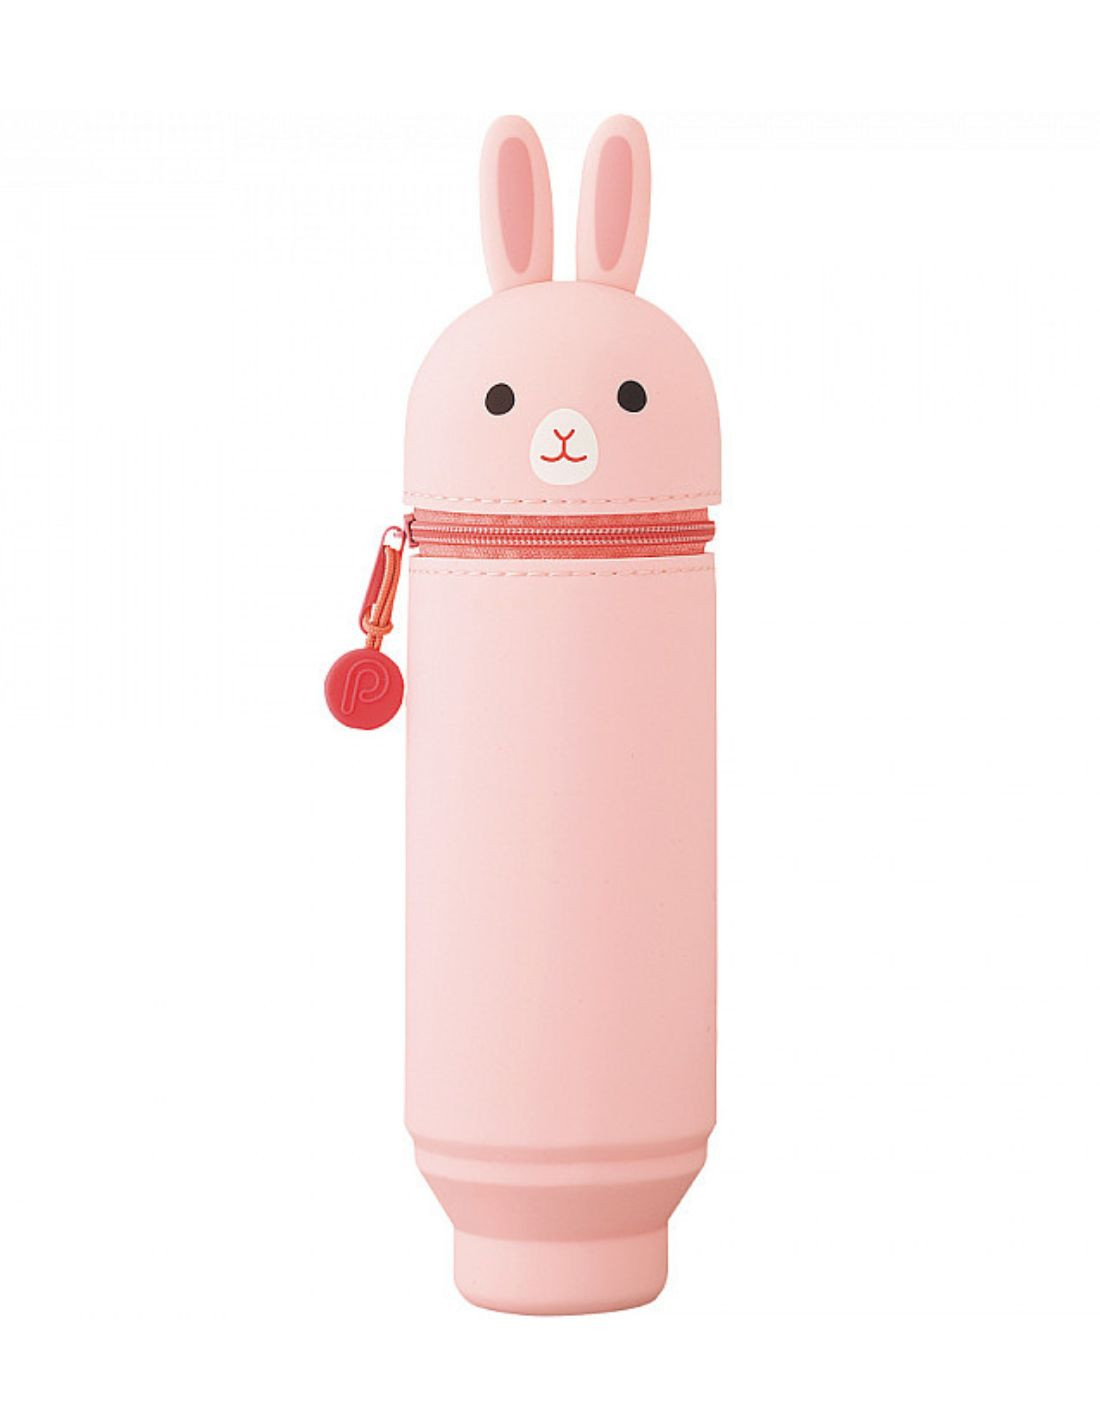 Stand Pen Case - Pink Rabbit - Punilabo